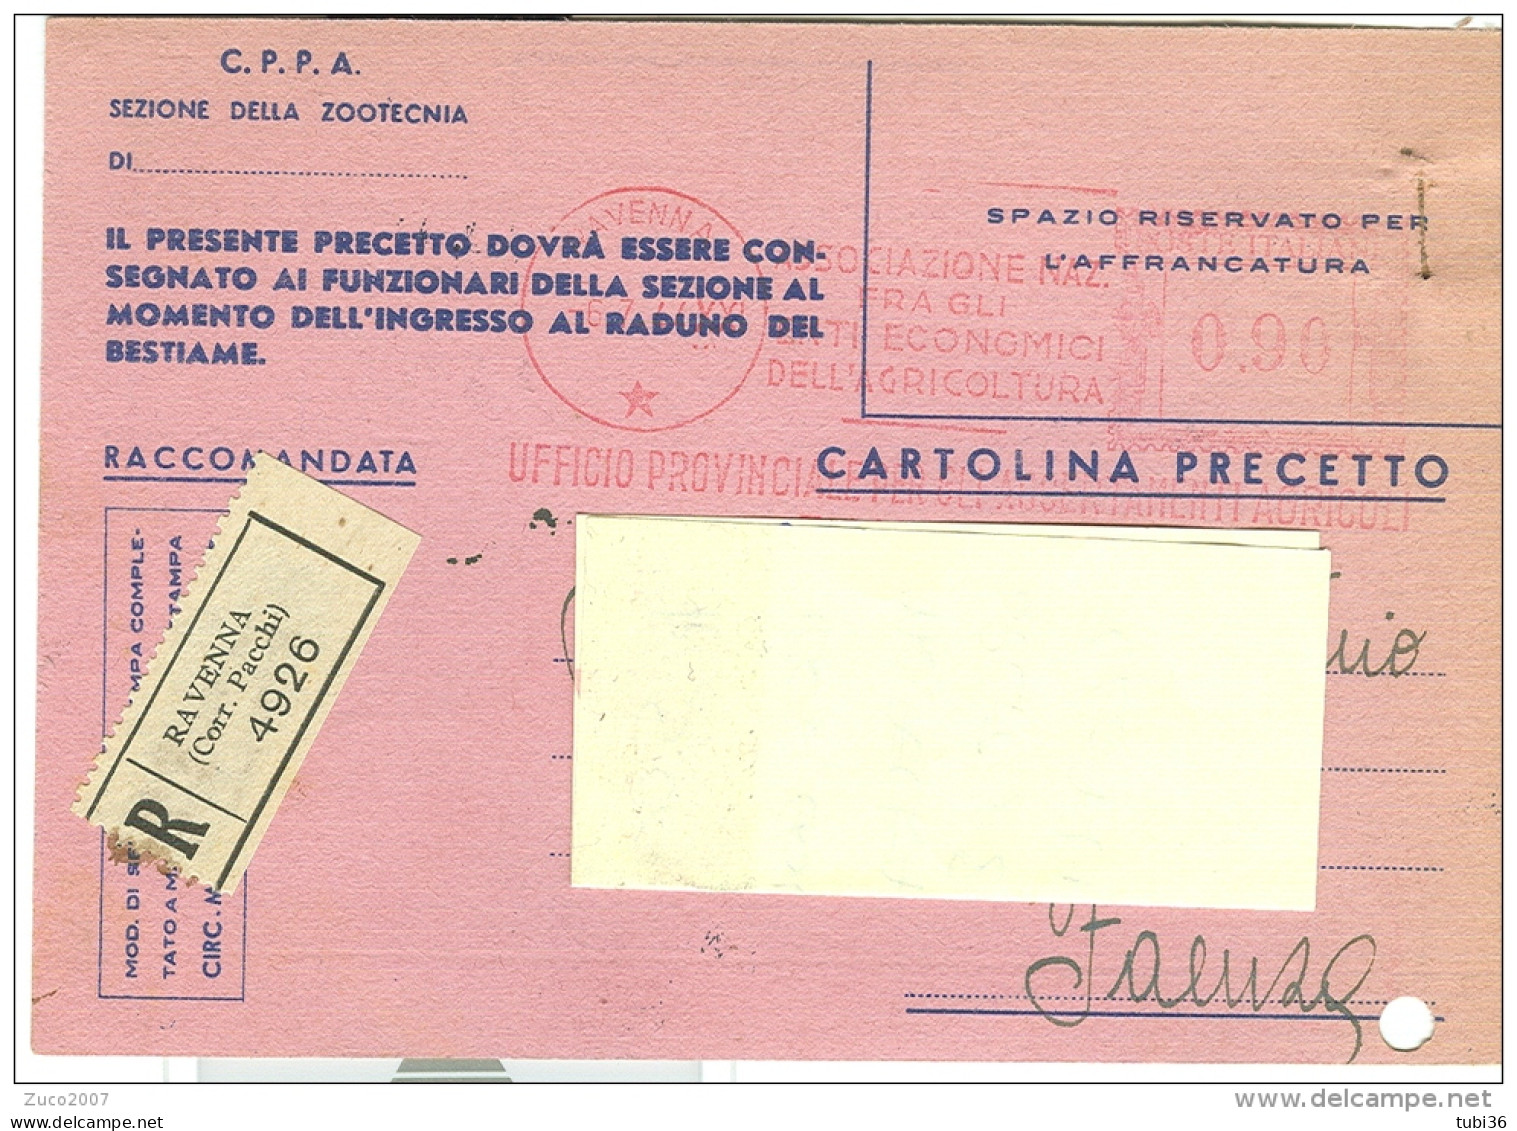 CARTOLINA PRECETTO, BESTIAME BOVINO, FAENZA 1944, DOCUMENTO RARO, - Faenza